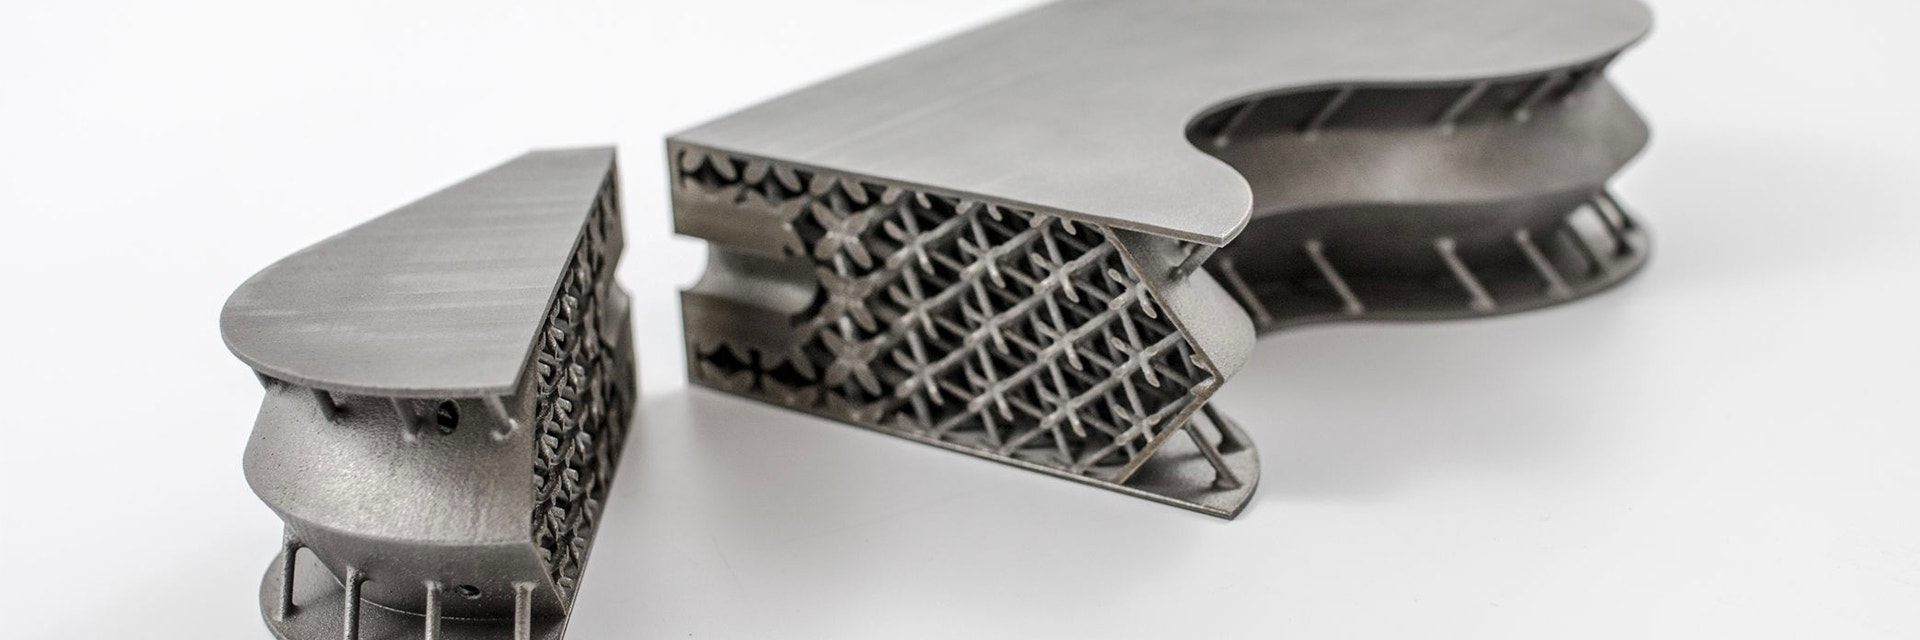 Aerospace component 3D-printed in titanium 